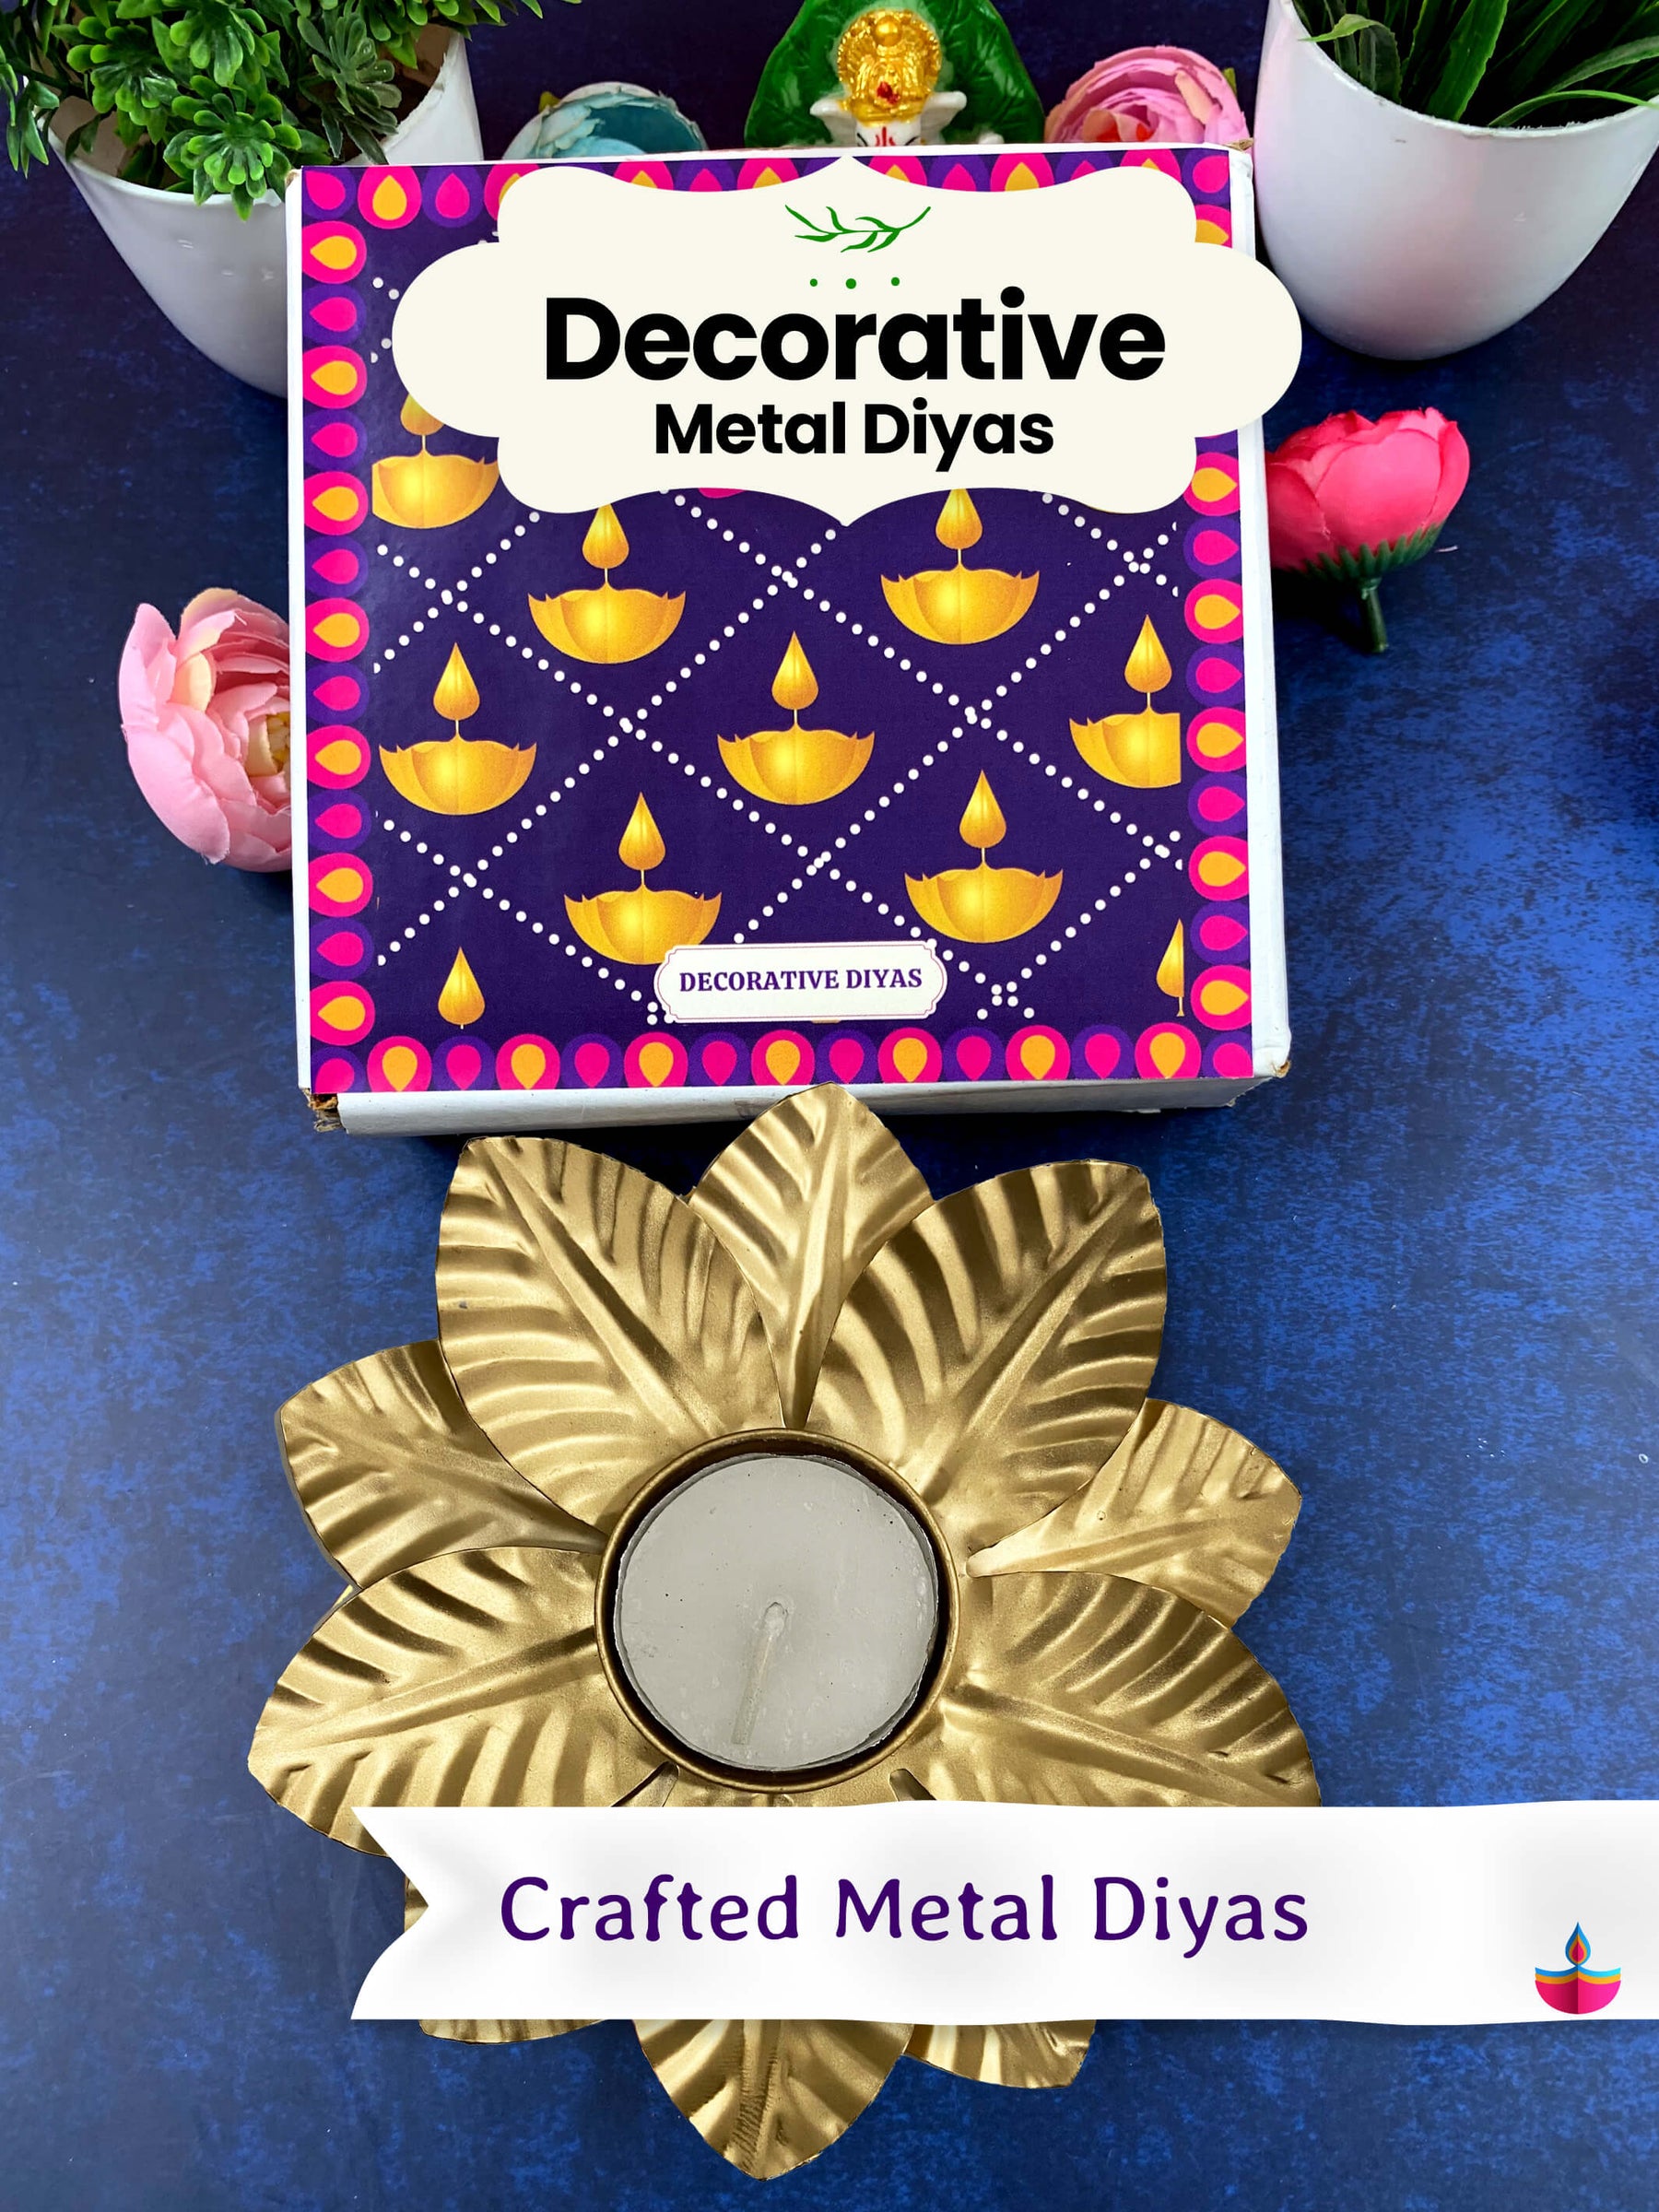 Decorative Metal Diya - Diwali Gift (Pack of 2)